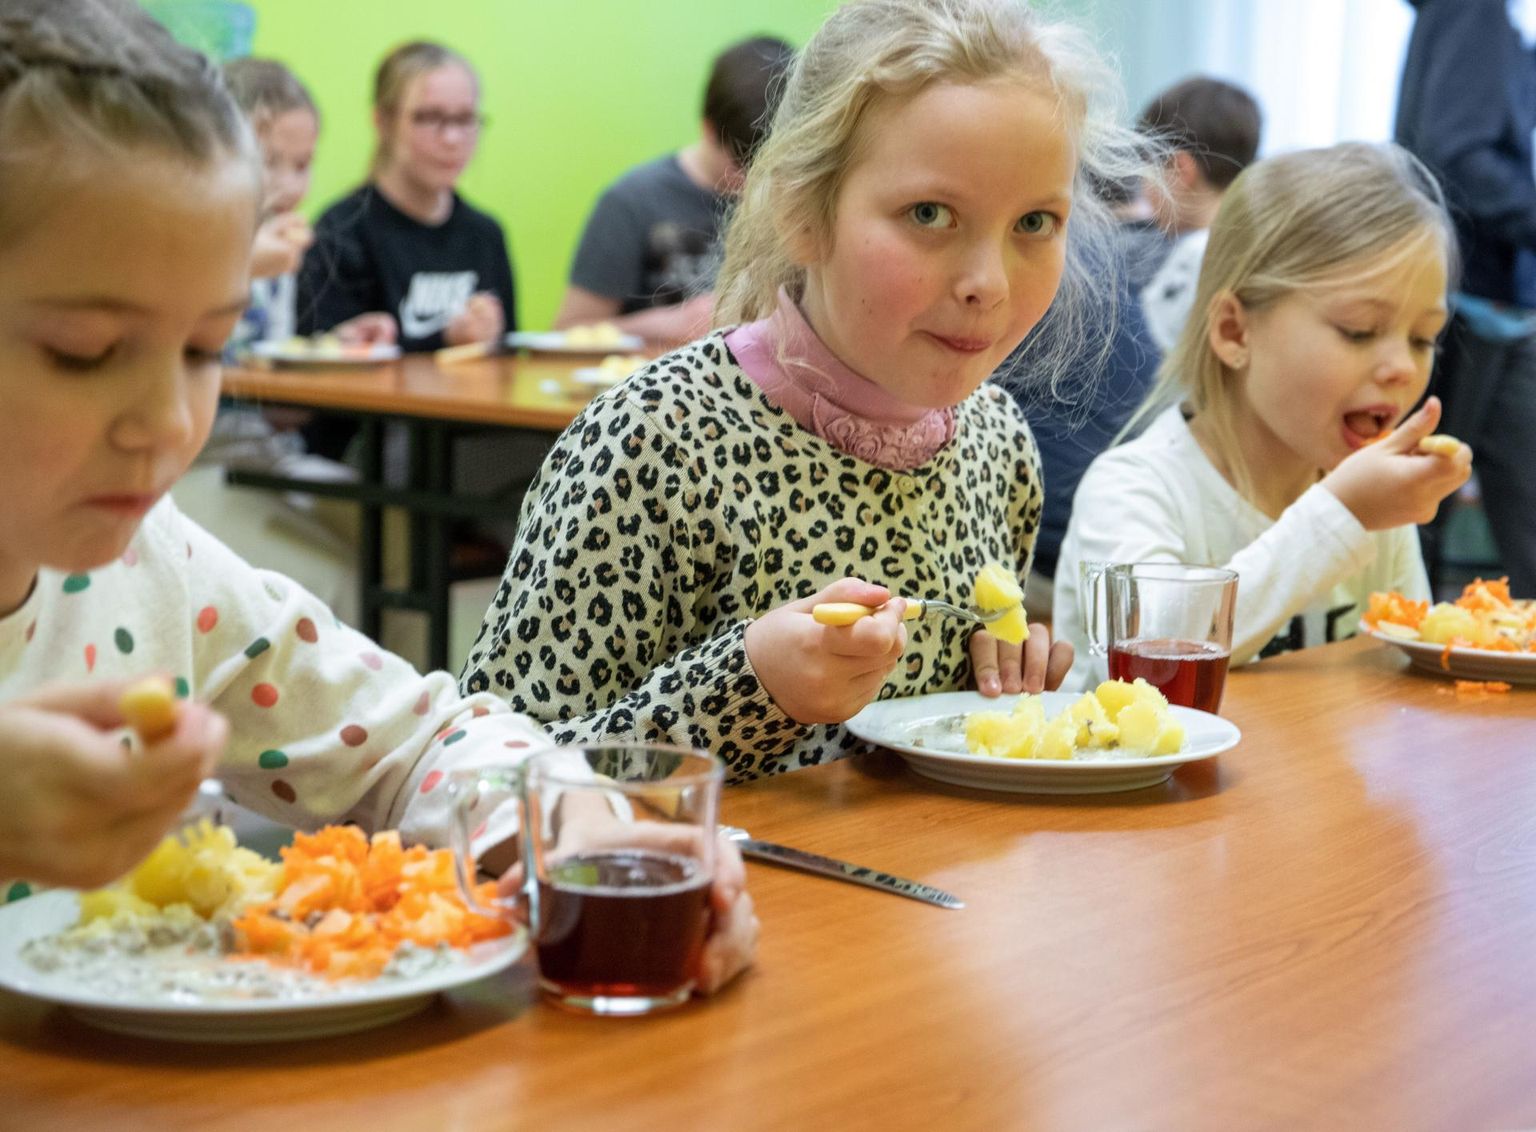 Kõmsi lasteaia-algkooli pere on ühel nõul, et ­söögid on neil maitsvad ja tervislikud.